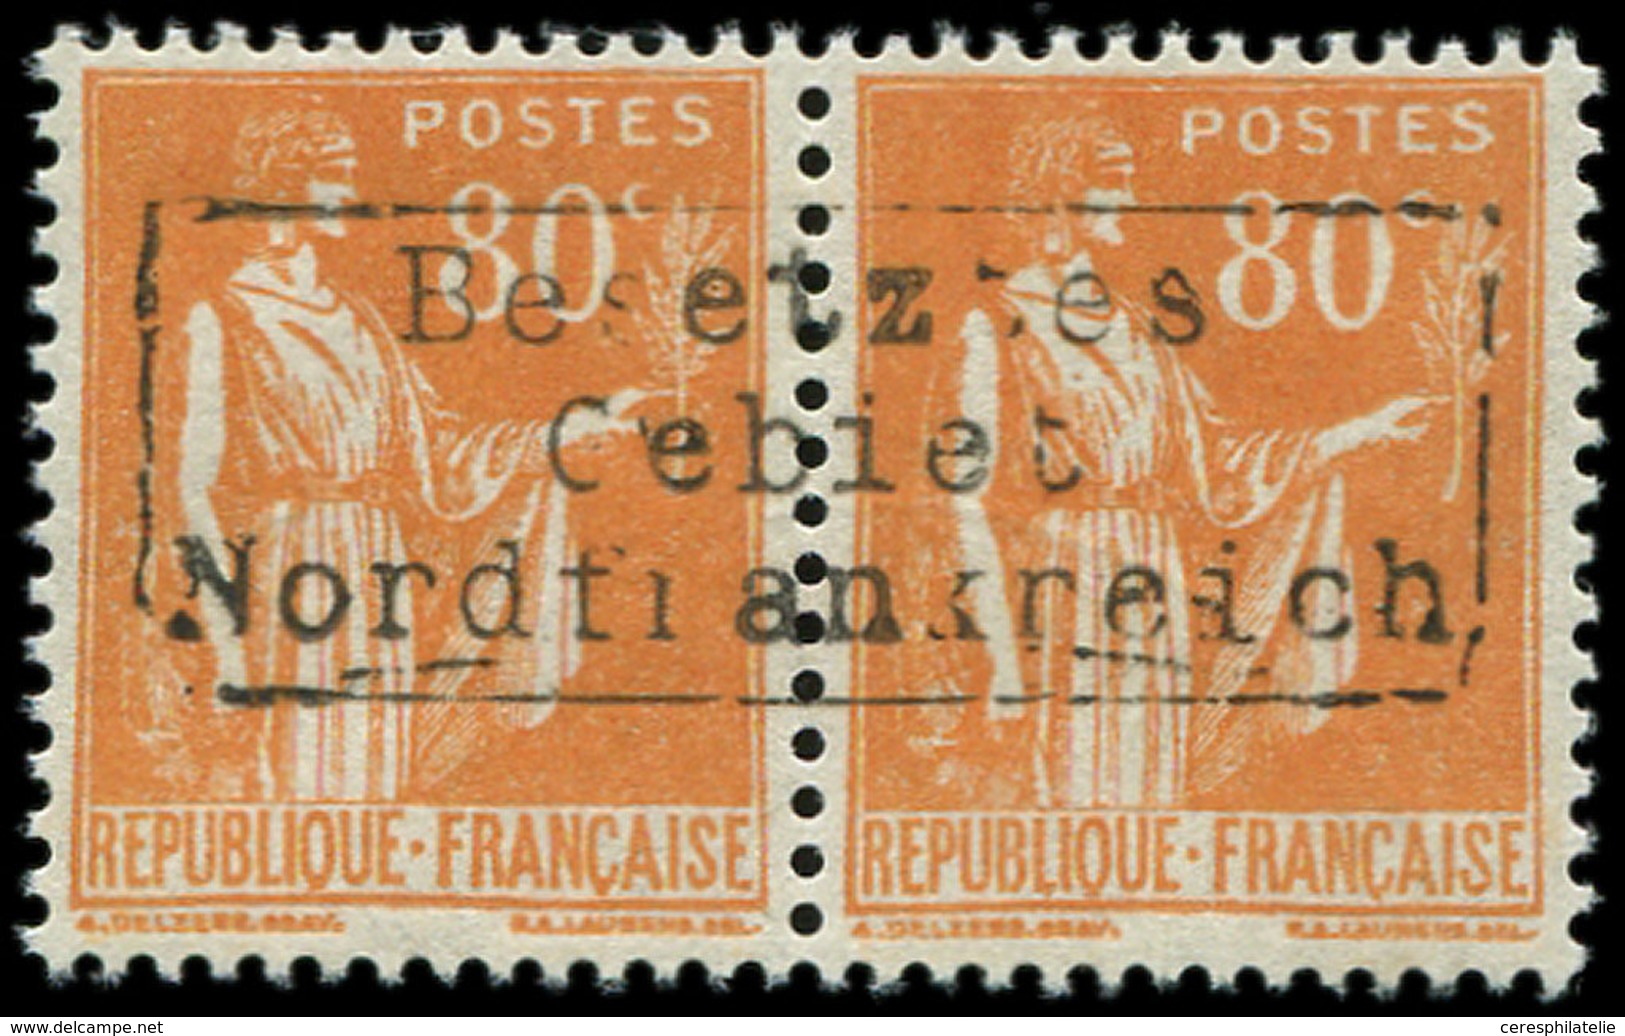 ** Spécialités Diverses GUERRE COUDEKERQUE Poste N°366 : 80c. Orange, Tous PAIRE TB - War Stamps